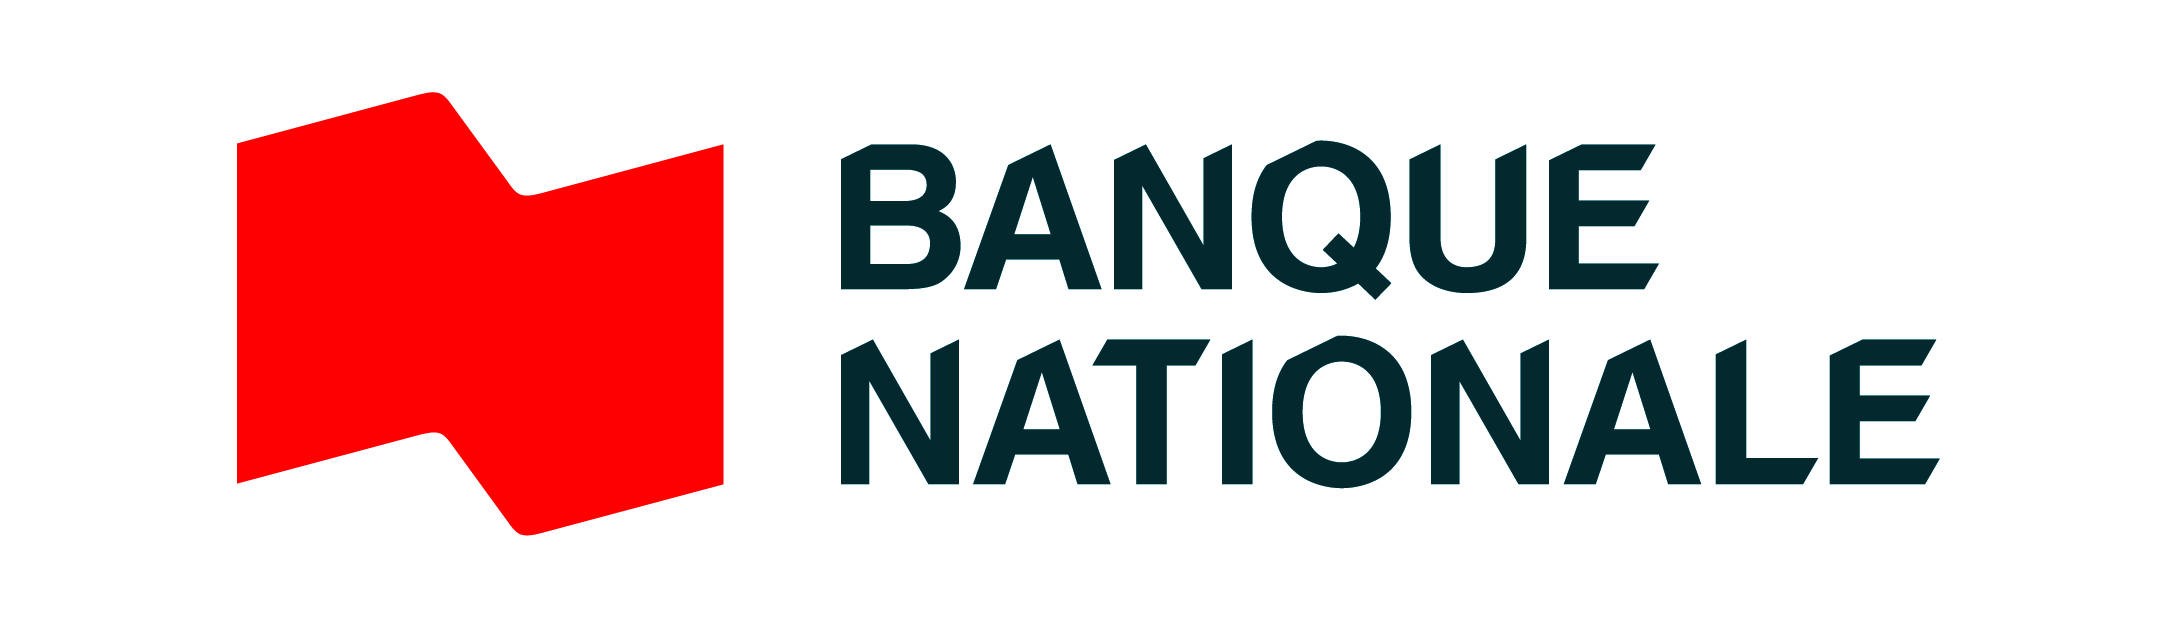 Banque Nationale.jpg (219 KB)